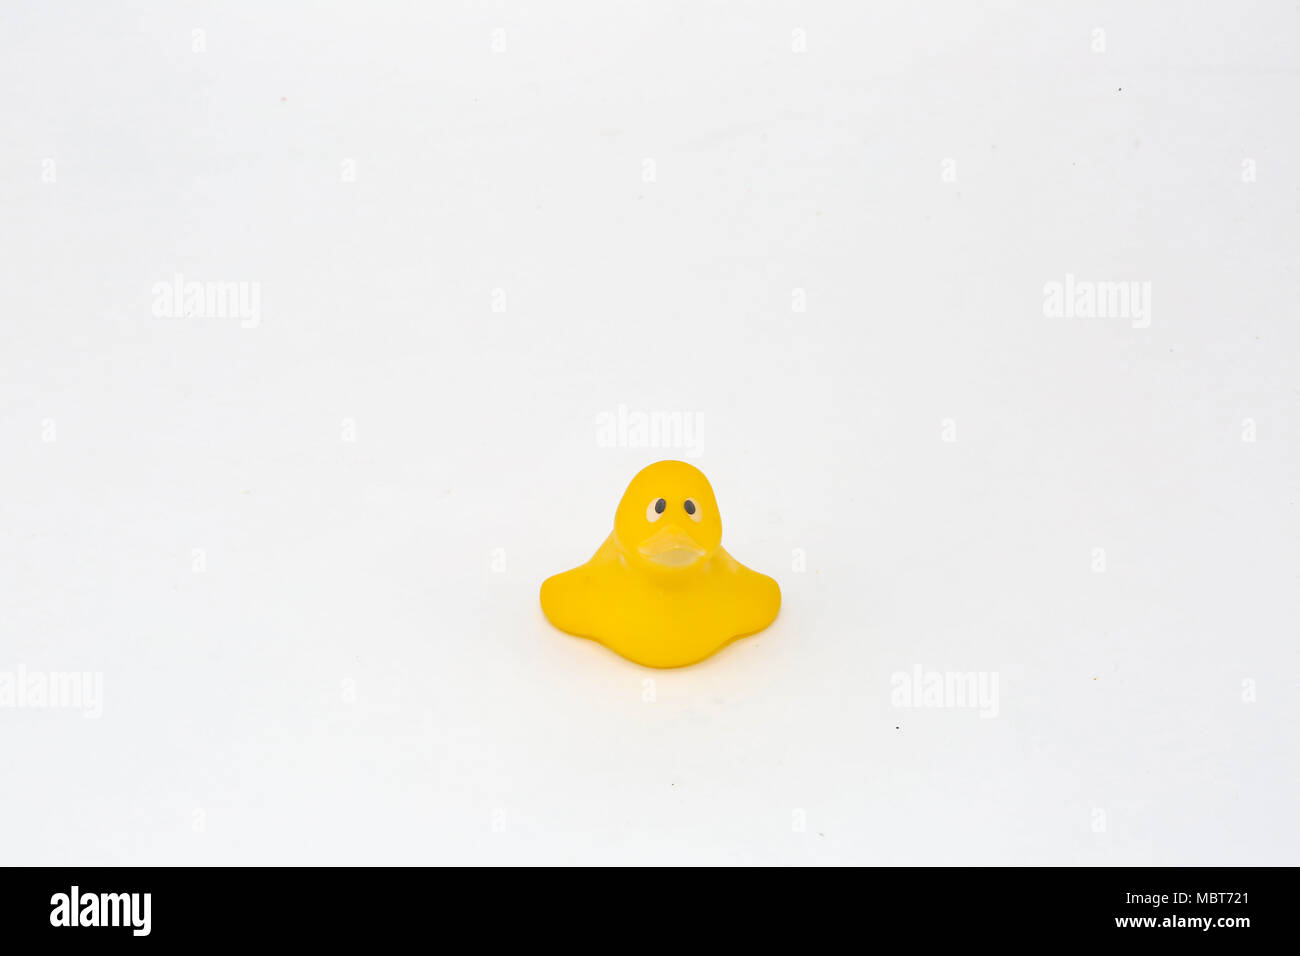 Un pato de juguete de plástico amarillo con ojos implorantes. El tipo de pato de plástico que pondría en un baño. La expresión evoca un sentimiento de simpatía. Foto de stock